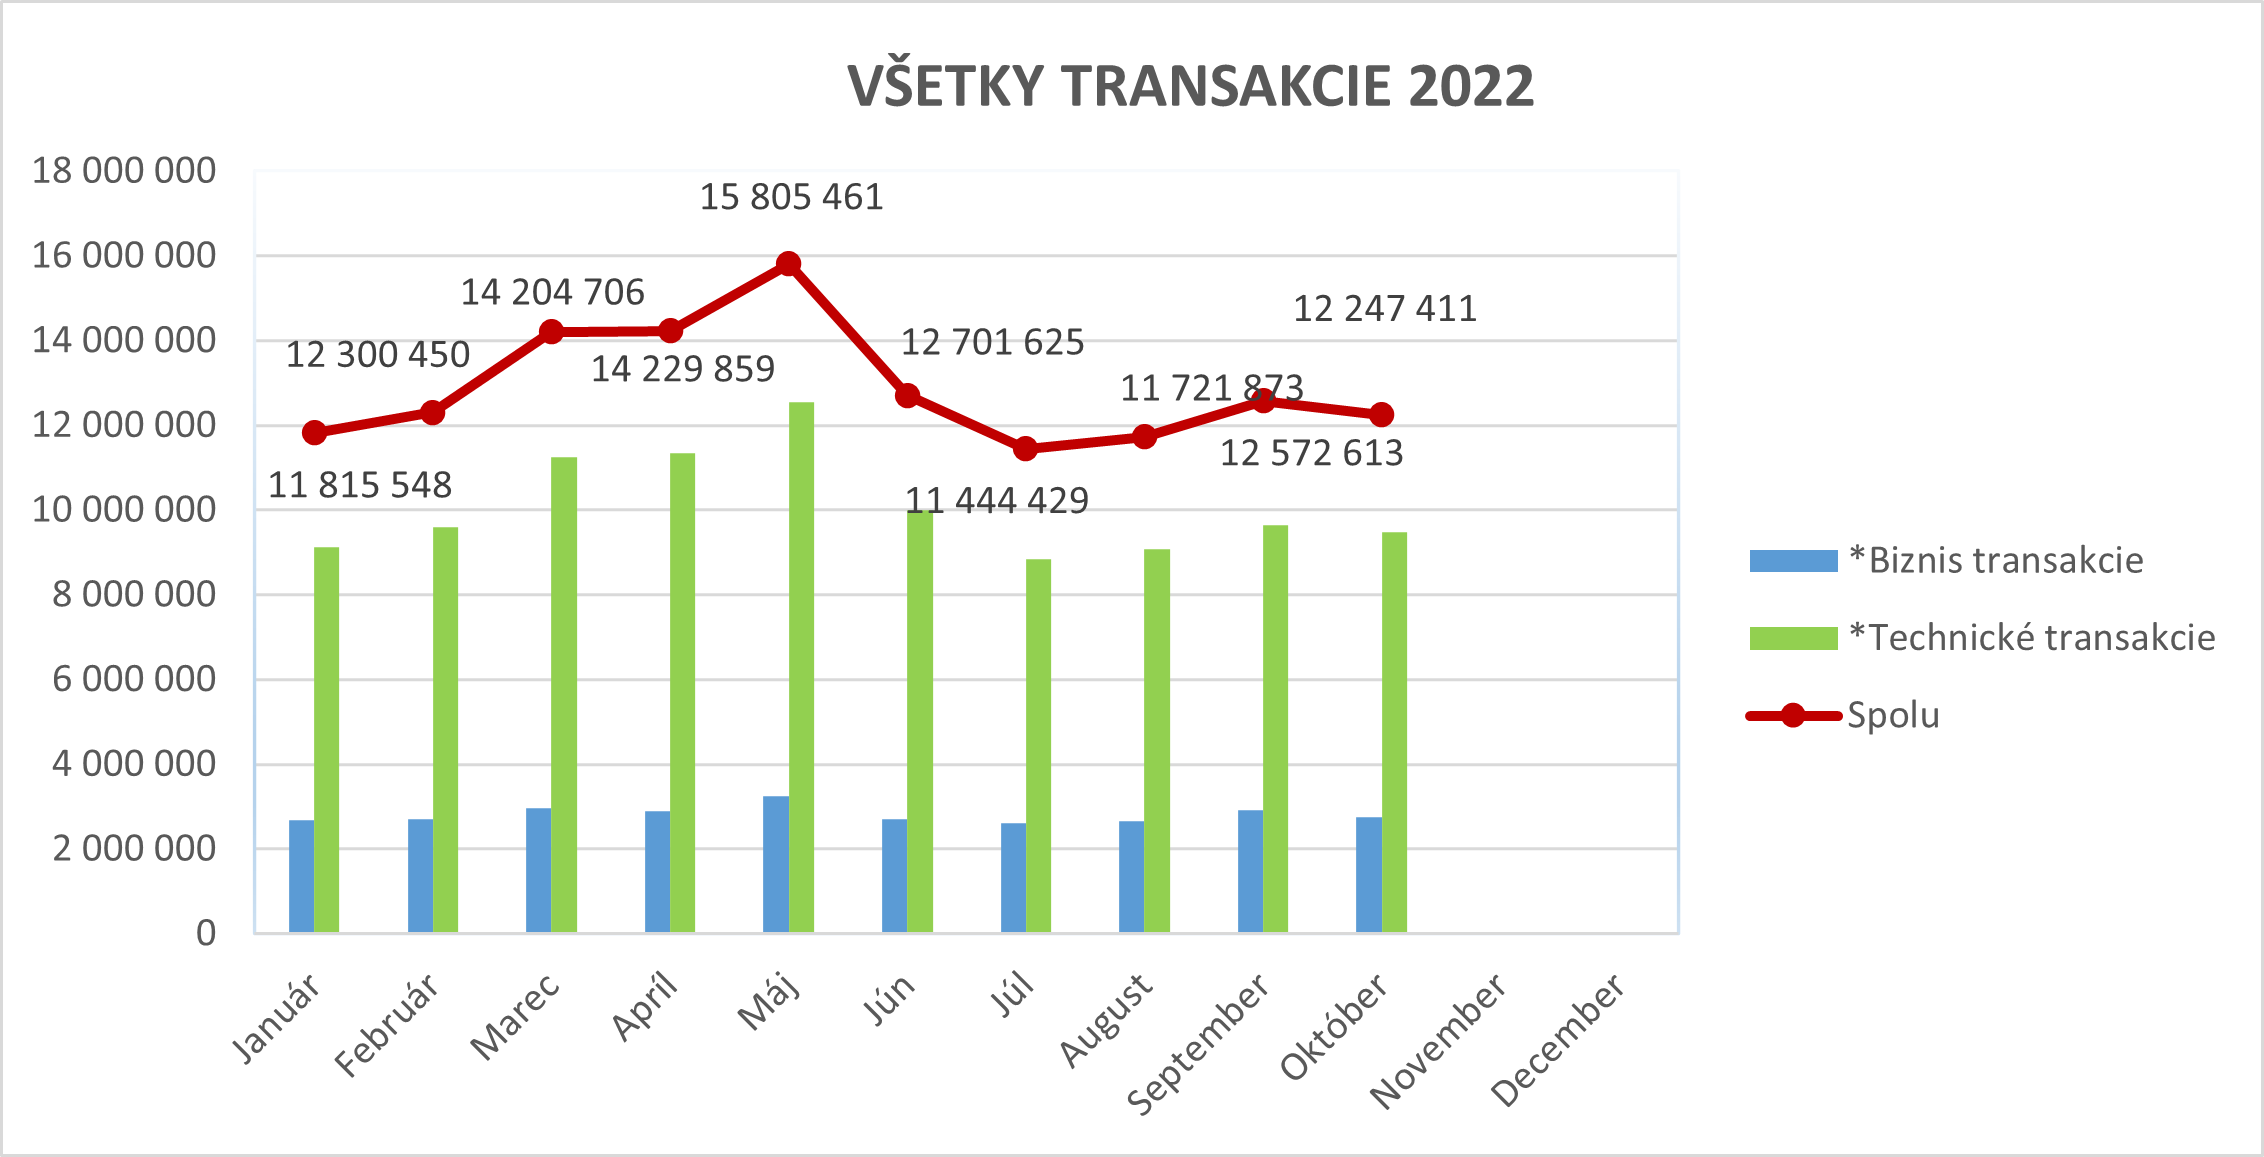 Ilustračný stĺpcový graf zobrazujúci všetky transakcie za rok 2022.